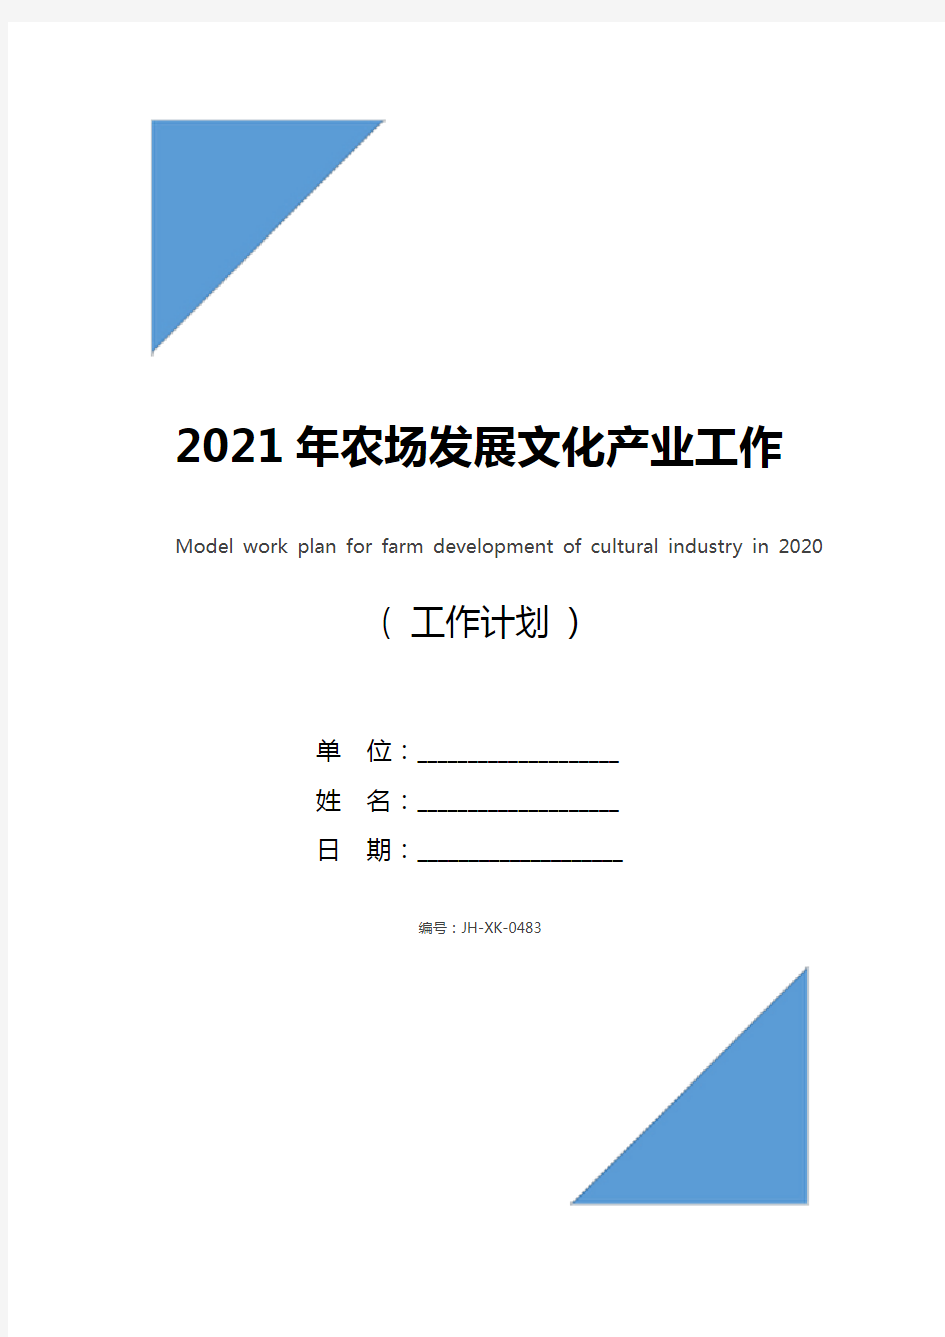 2021年农场发展文化产业工作计划范文(最新版)